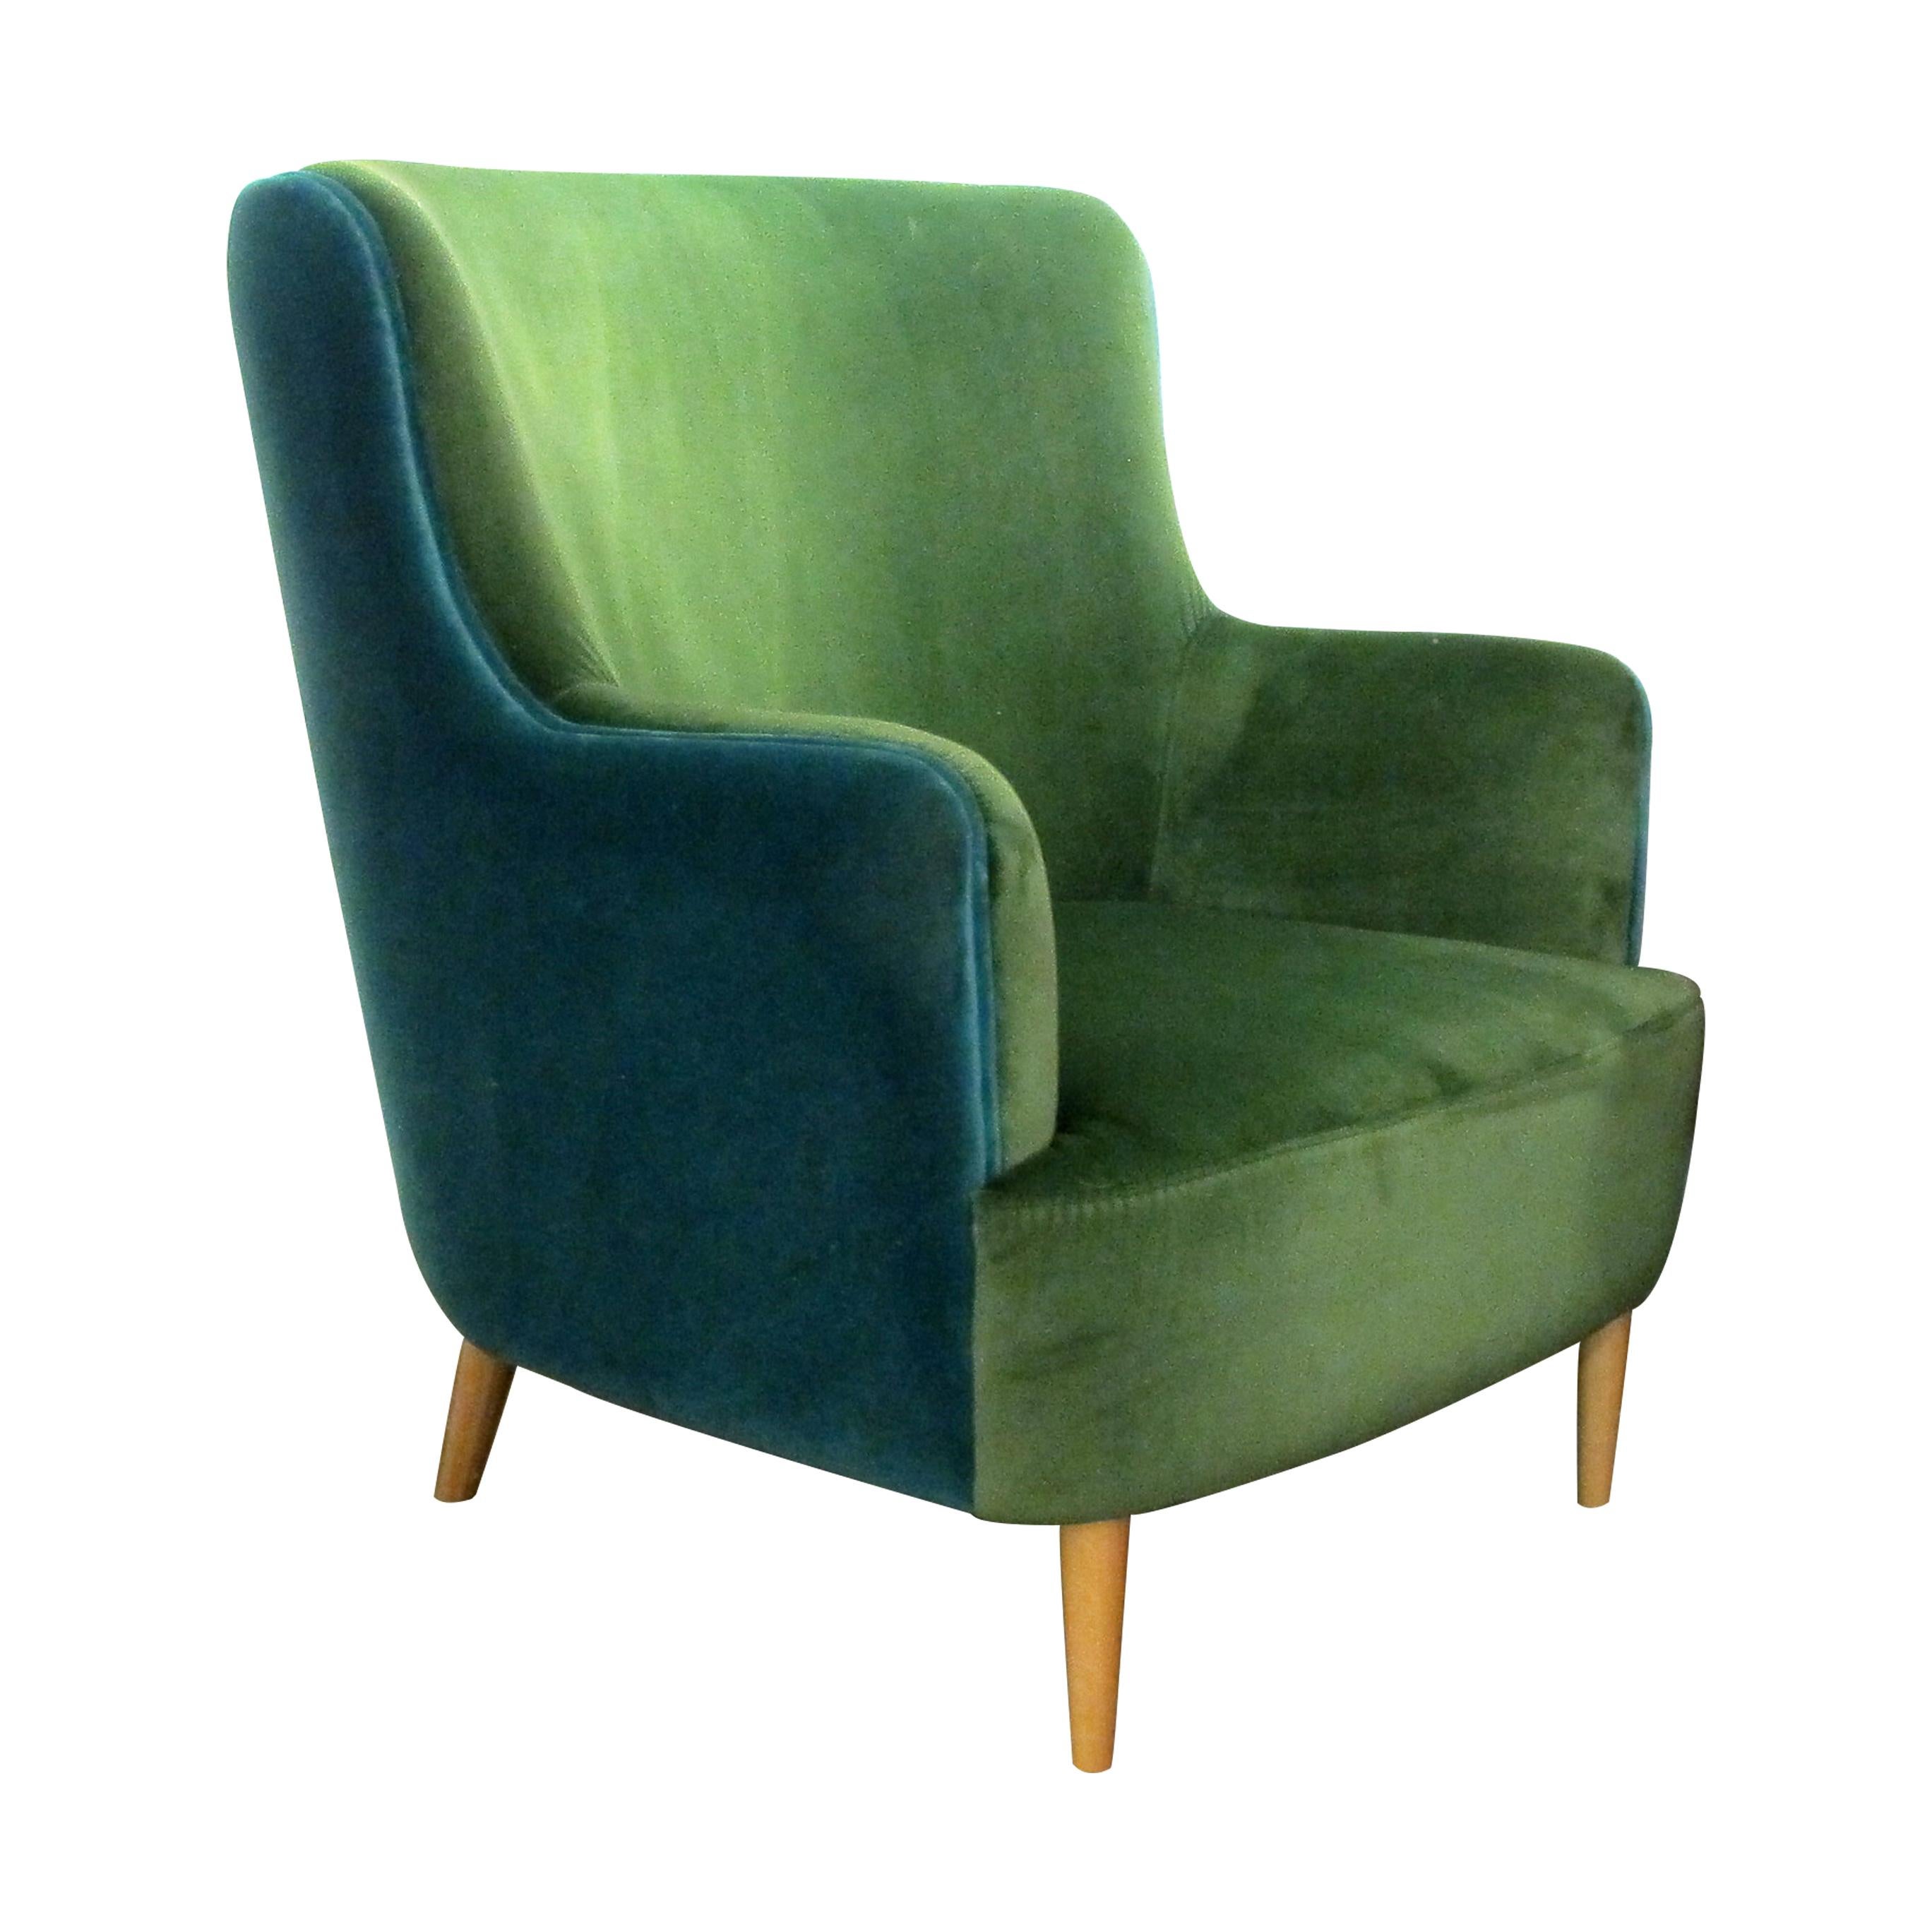 Modern Pair of Custom Made Armchairs Upholstered in Green & Torquoise Velvet Fabric